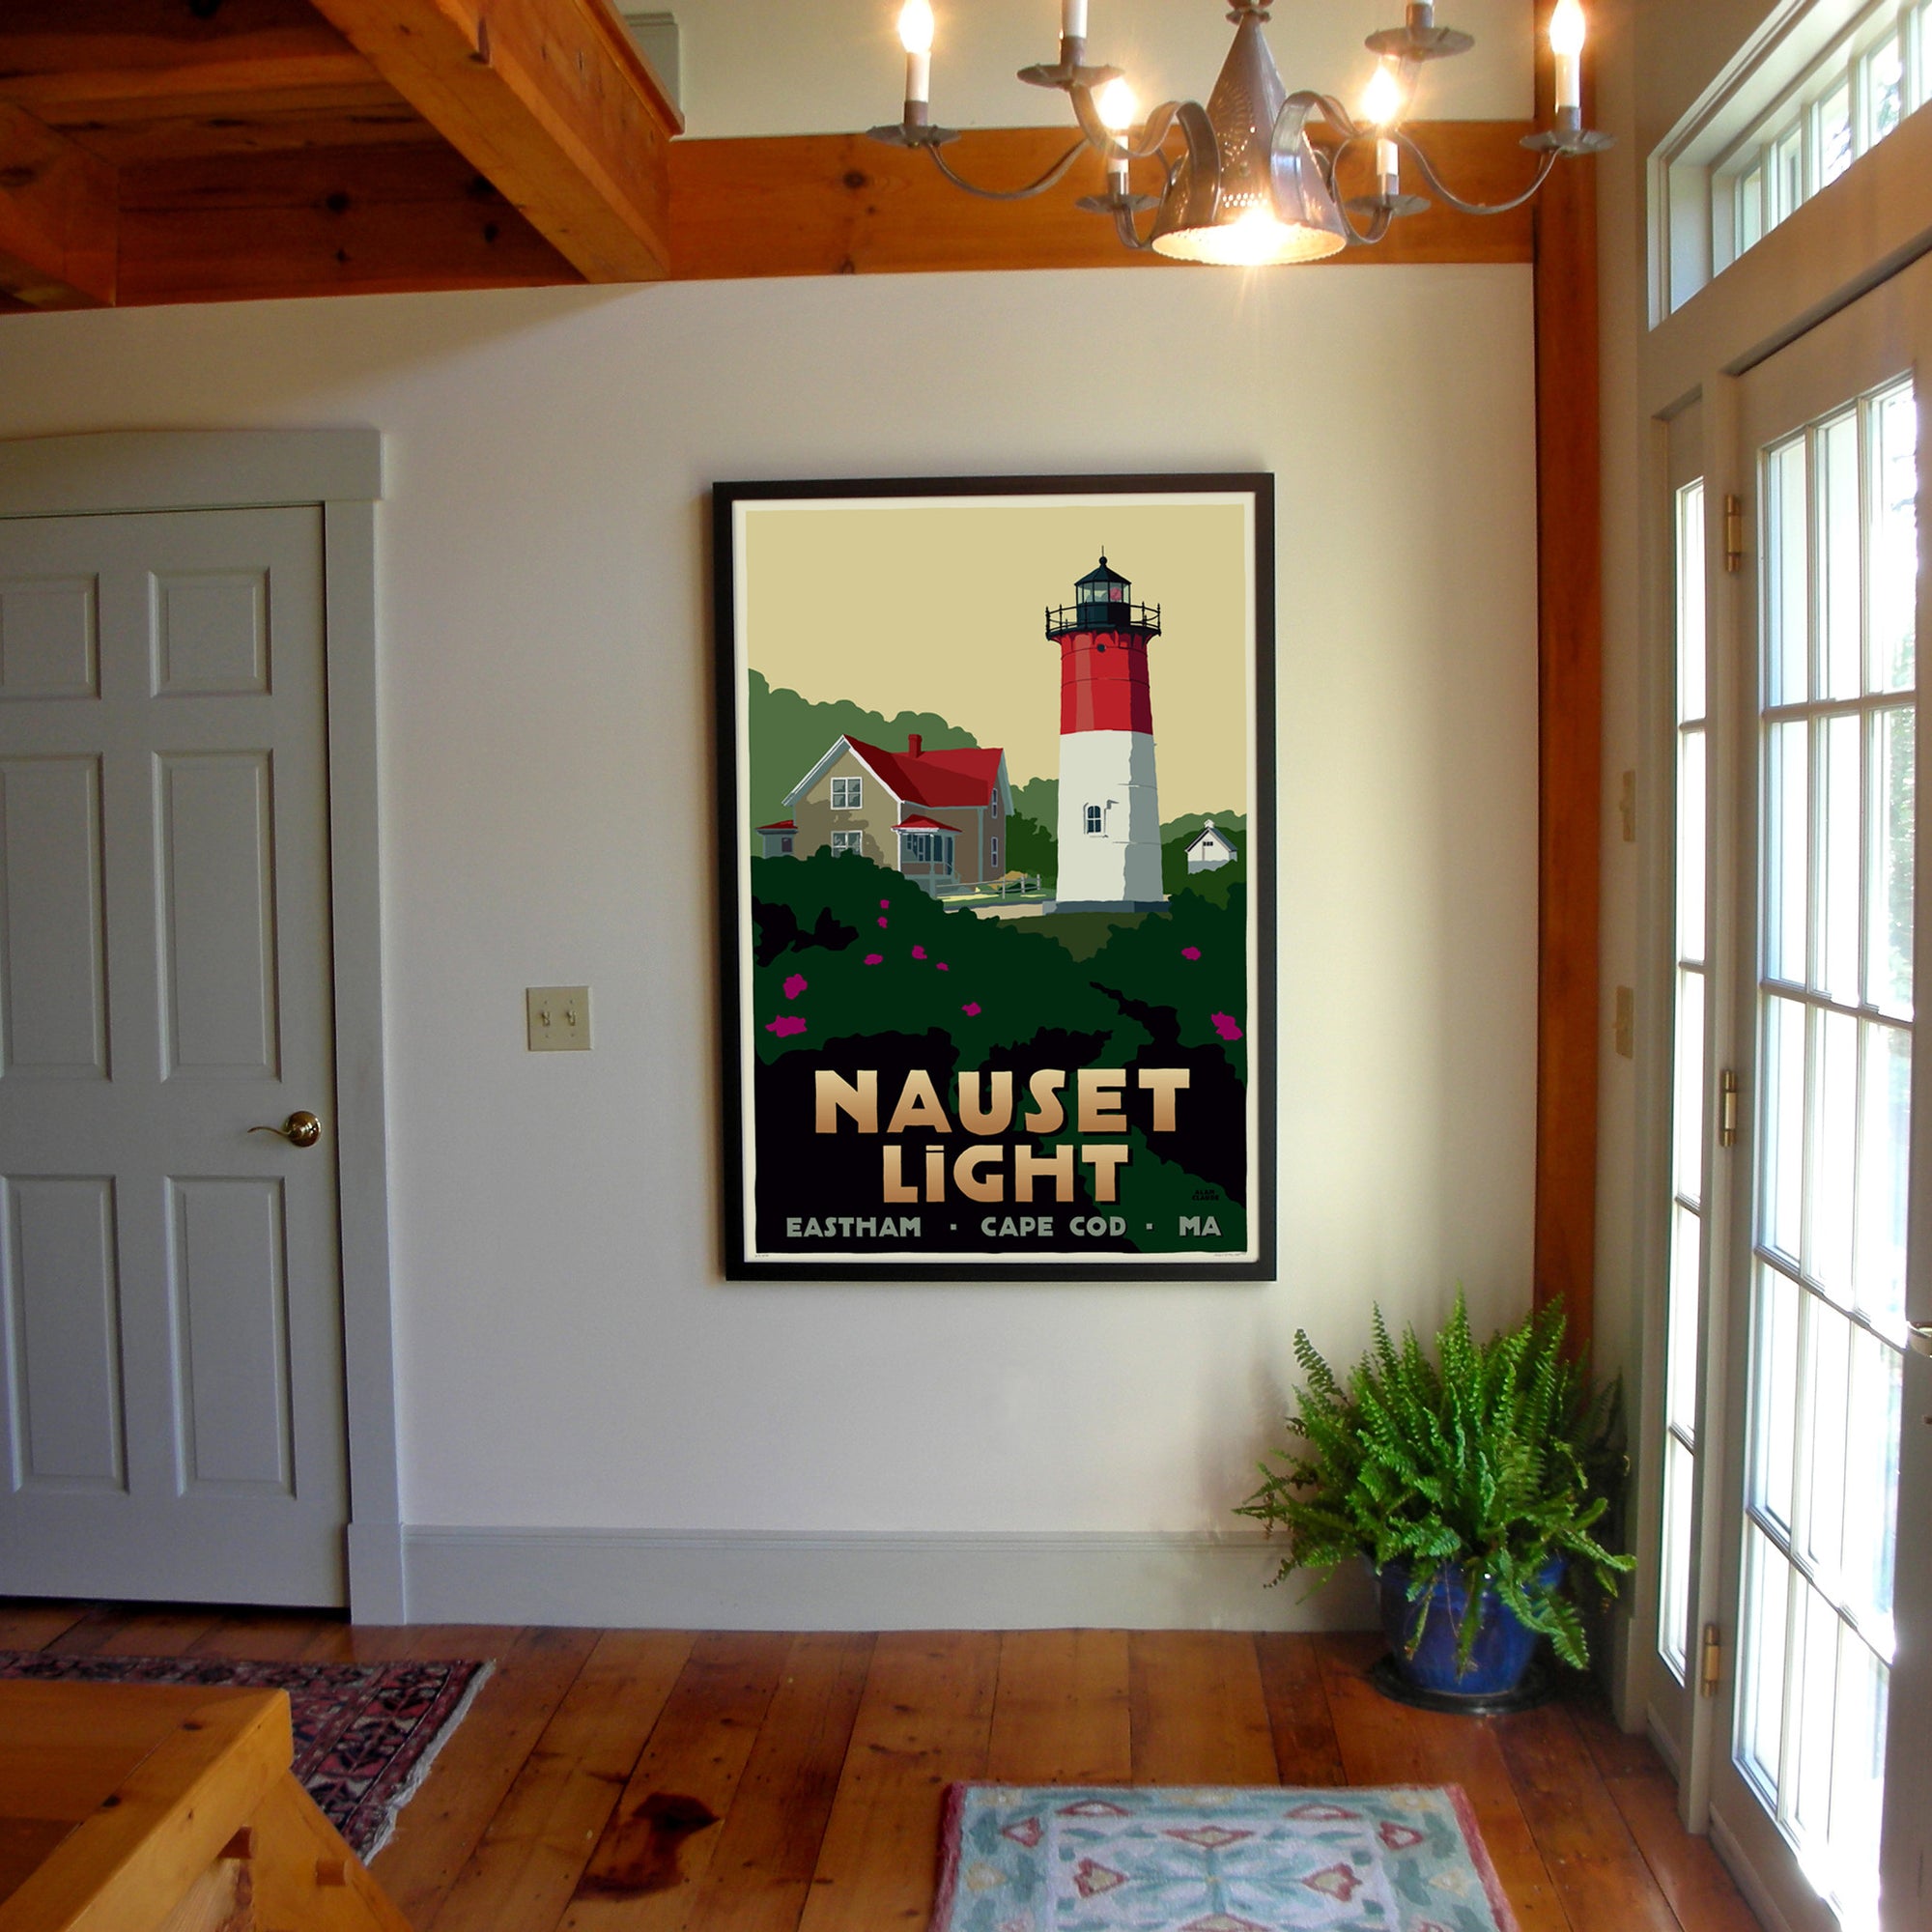 Nauset Light Art Print 36" x 53" Framed Travel Poster By Alan Claude - Massachusetts